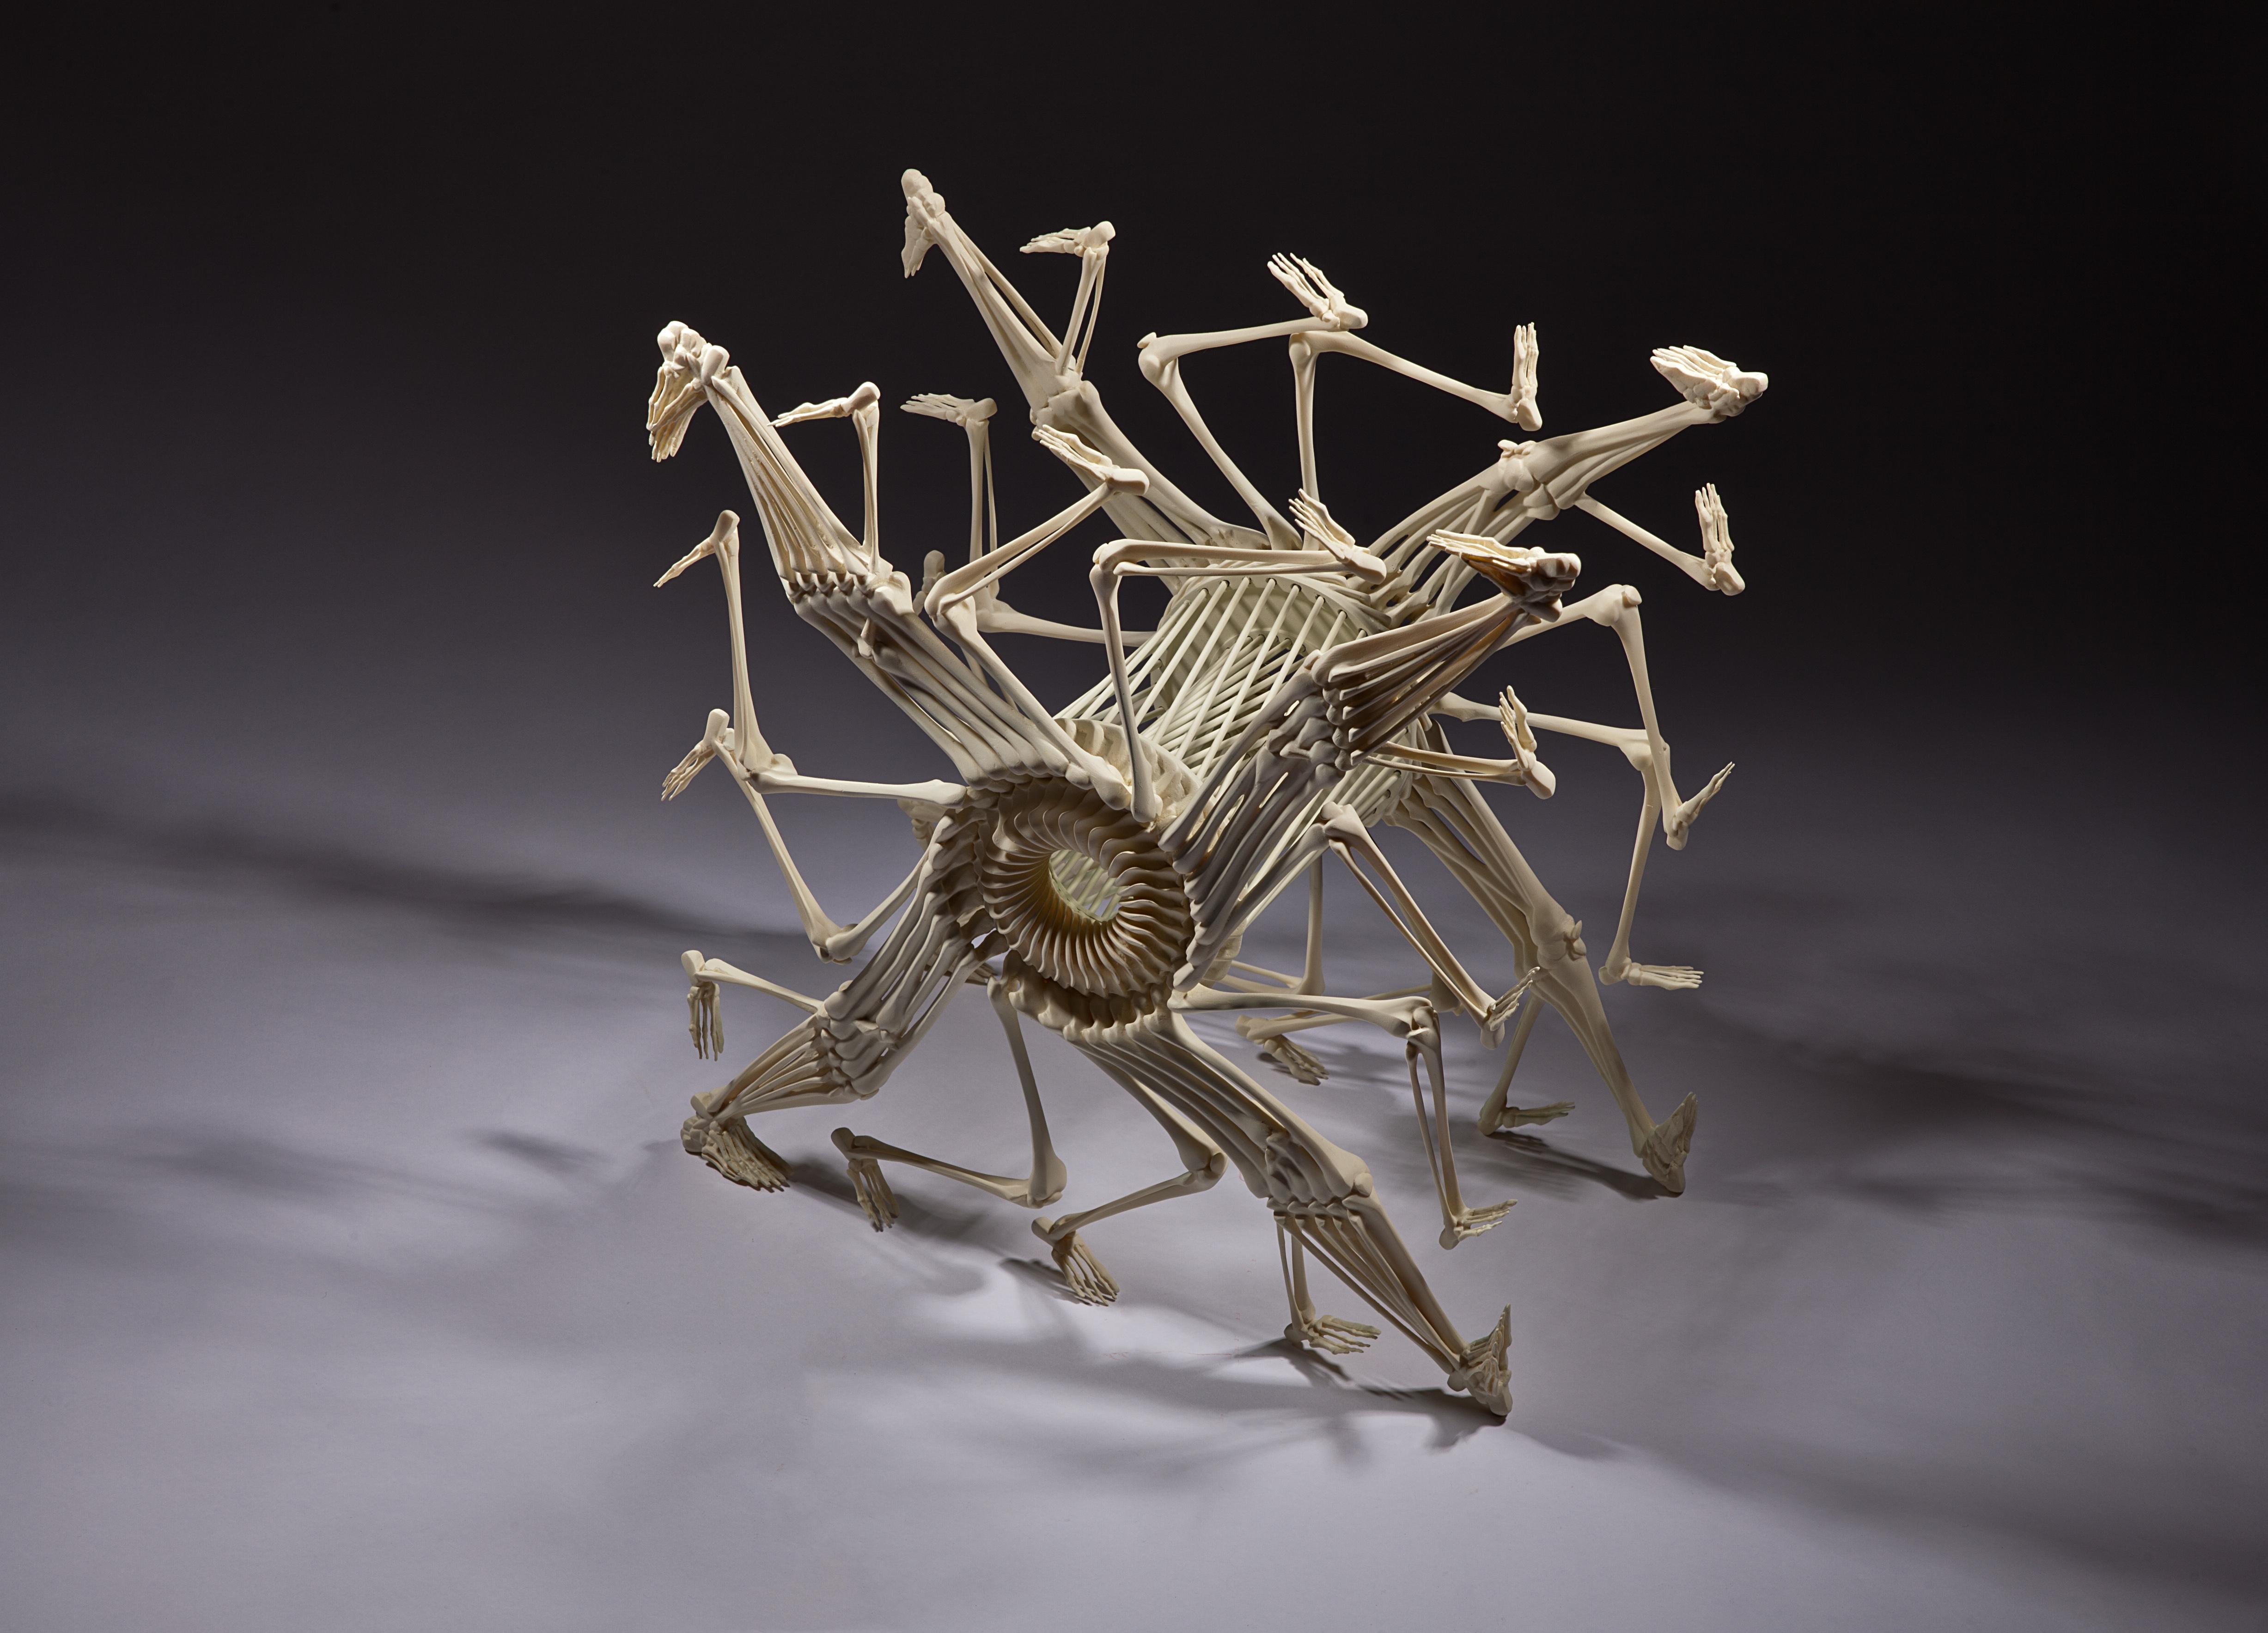 Art in Bones: 3D Printed Sculptures from The Czech Republic 3DPrint